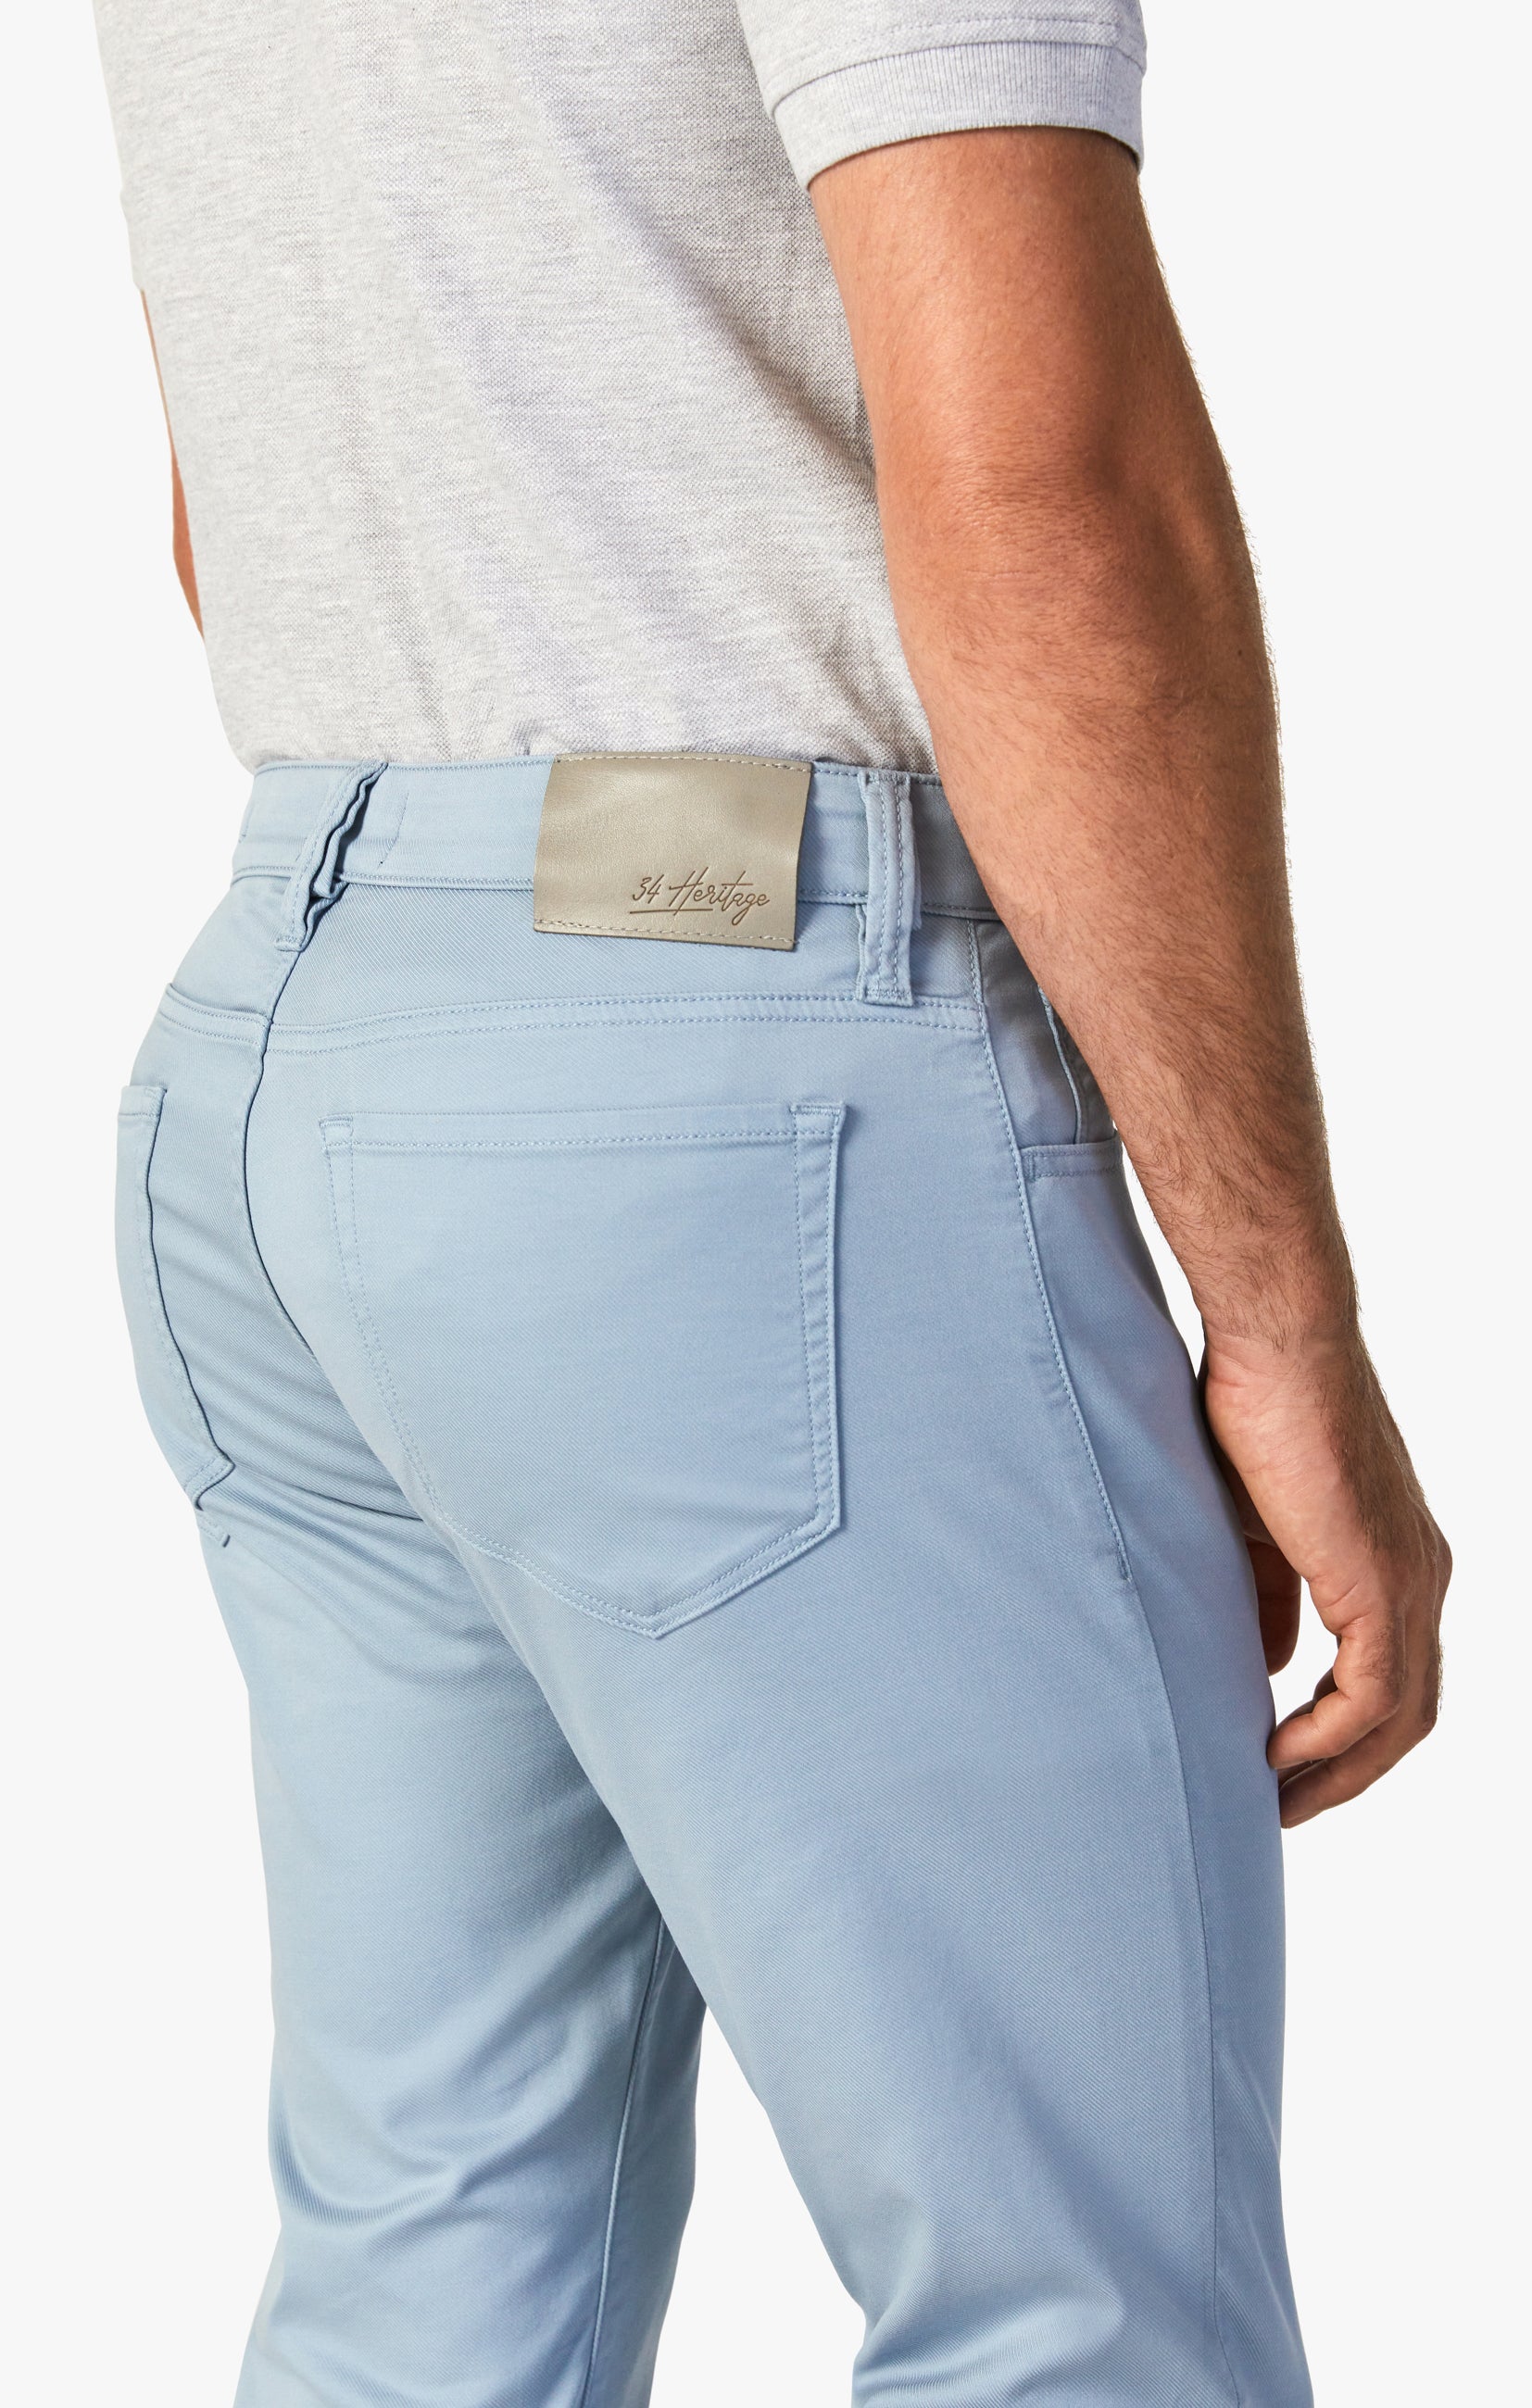 Men's pants chinos - light blue P894 | Ombre.com - Men's clothing online